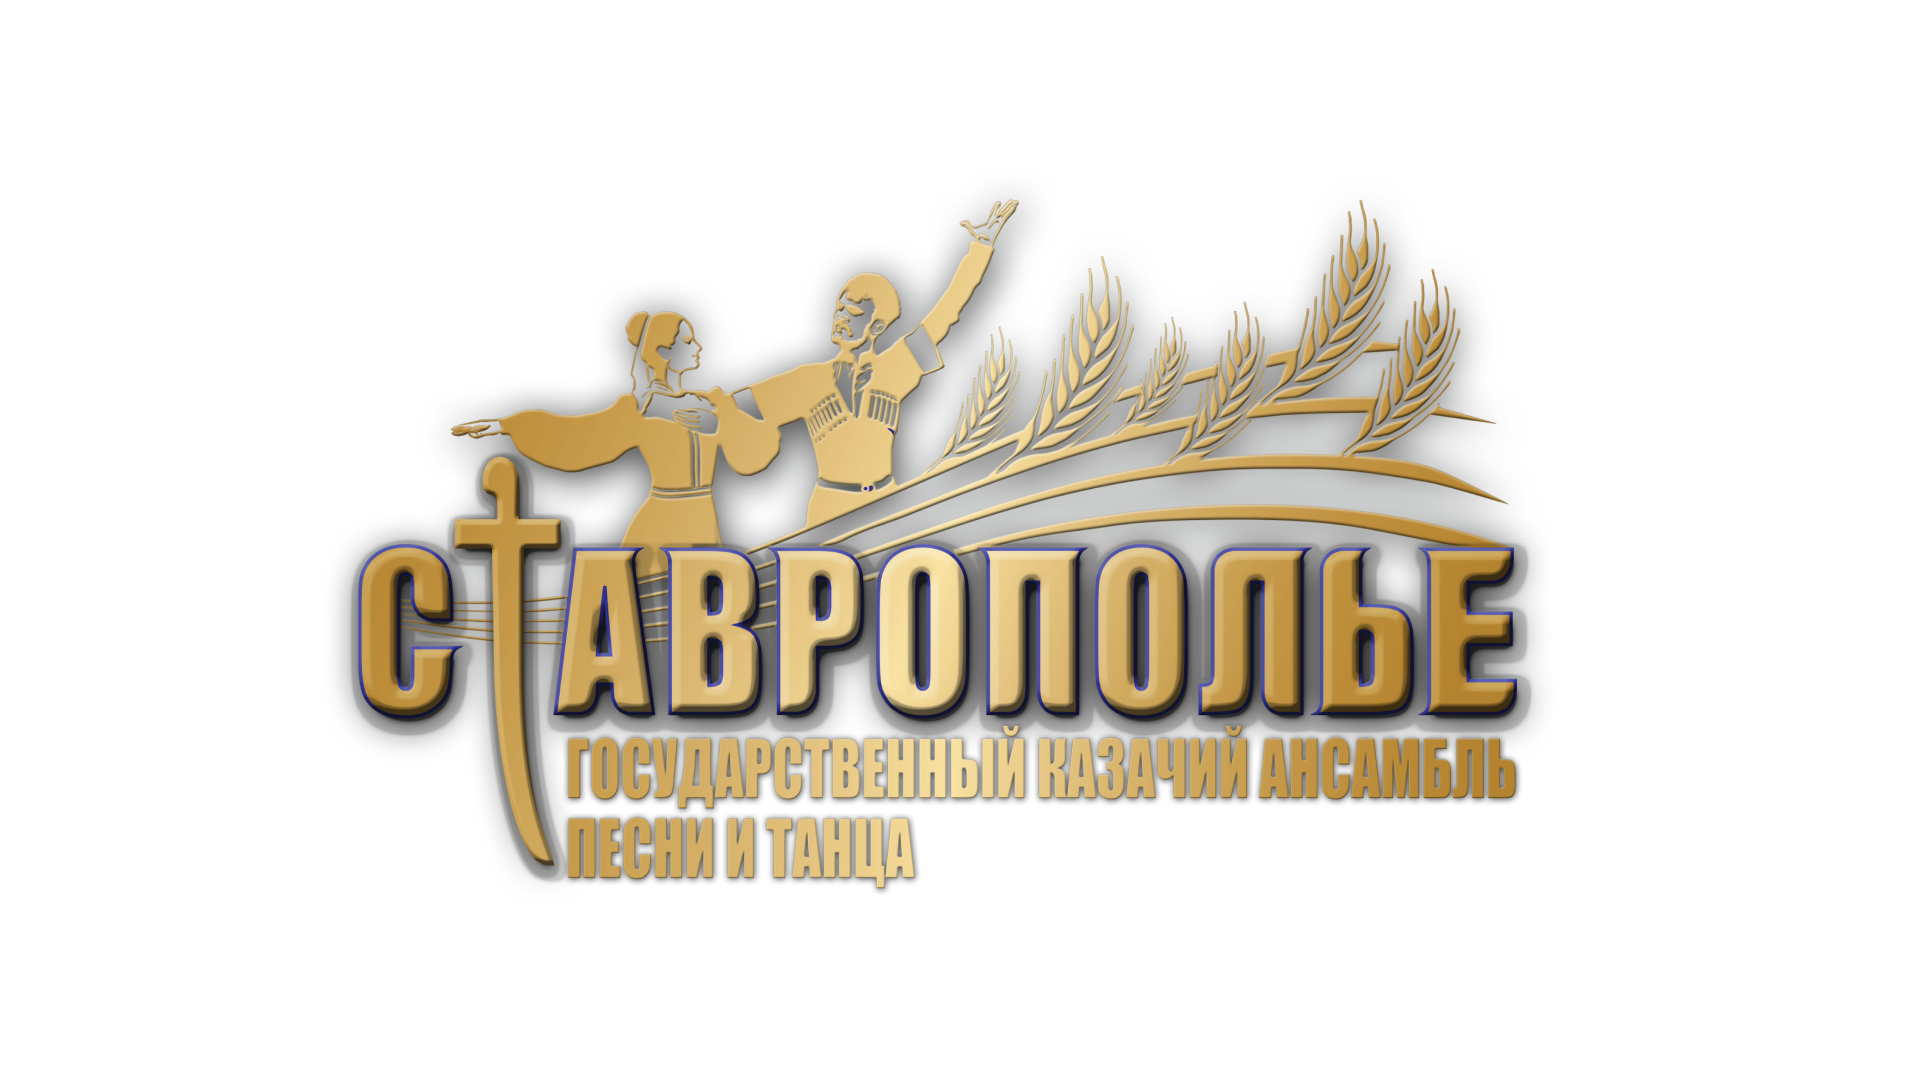 Государственный казачий ансамбль песни и танца «Ставрополье» отмечает 43-й День рождения